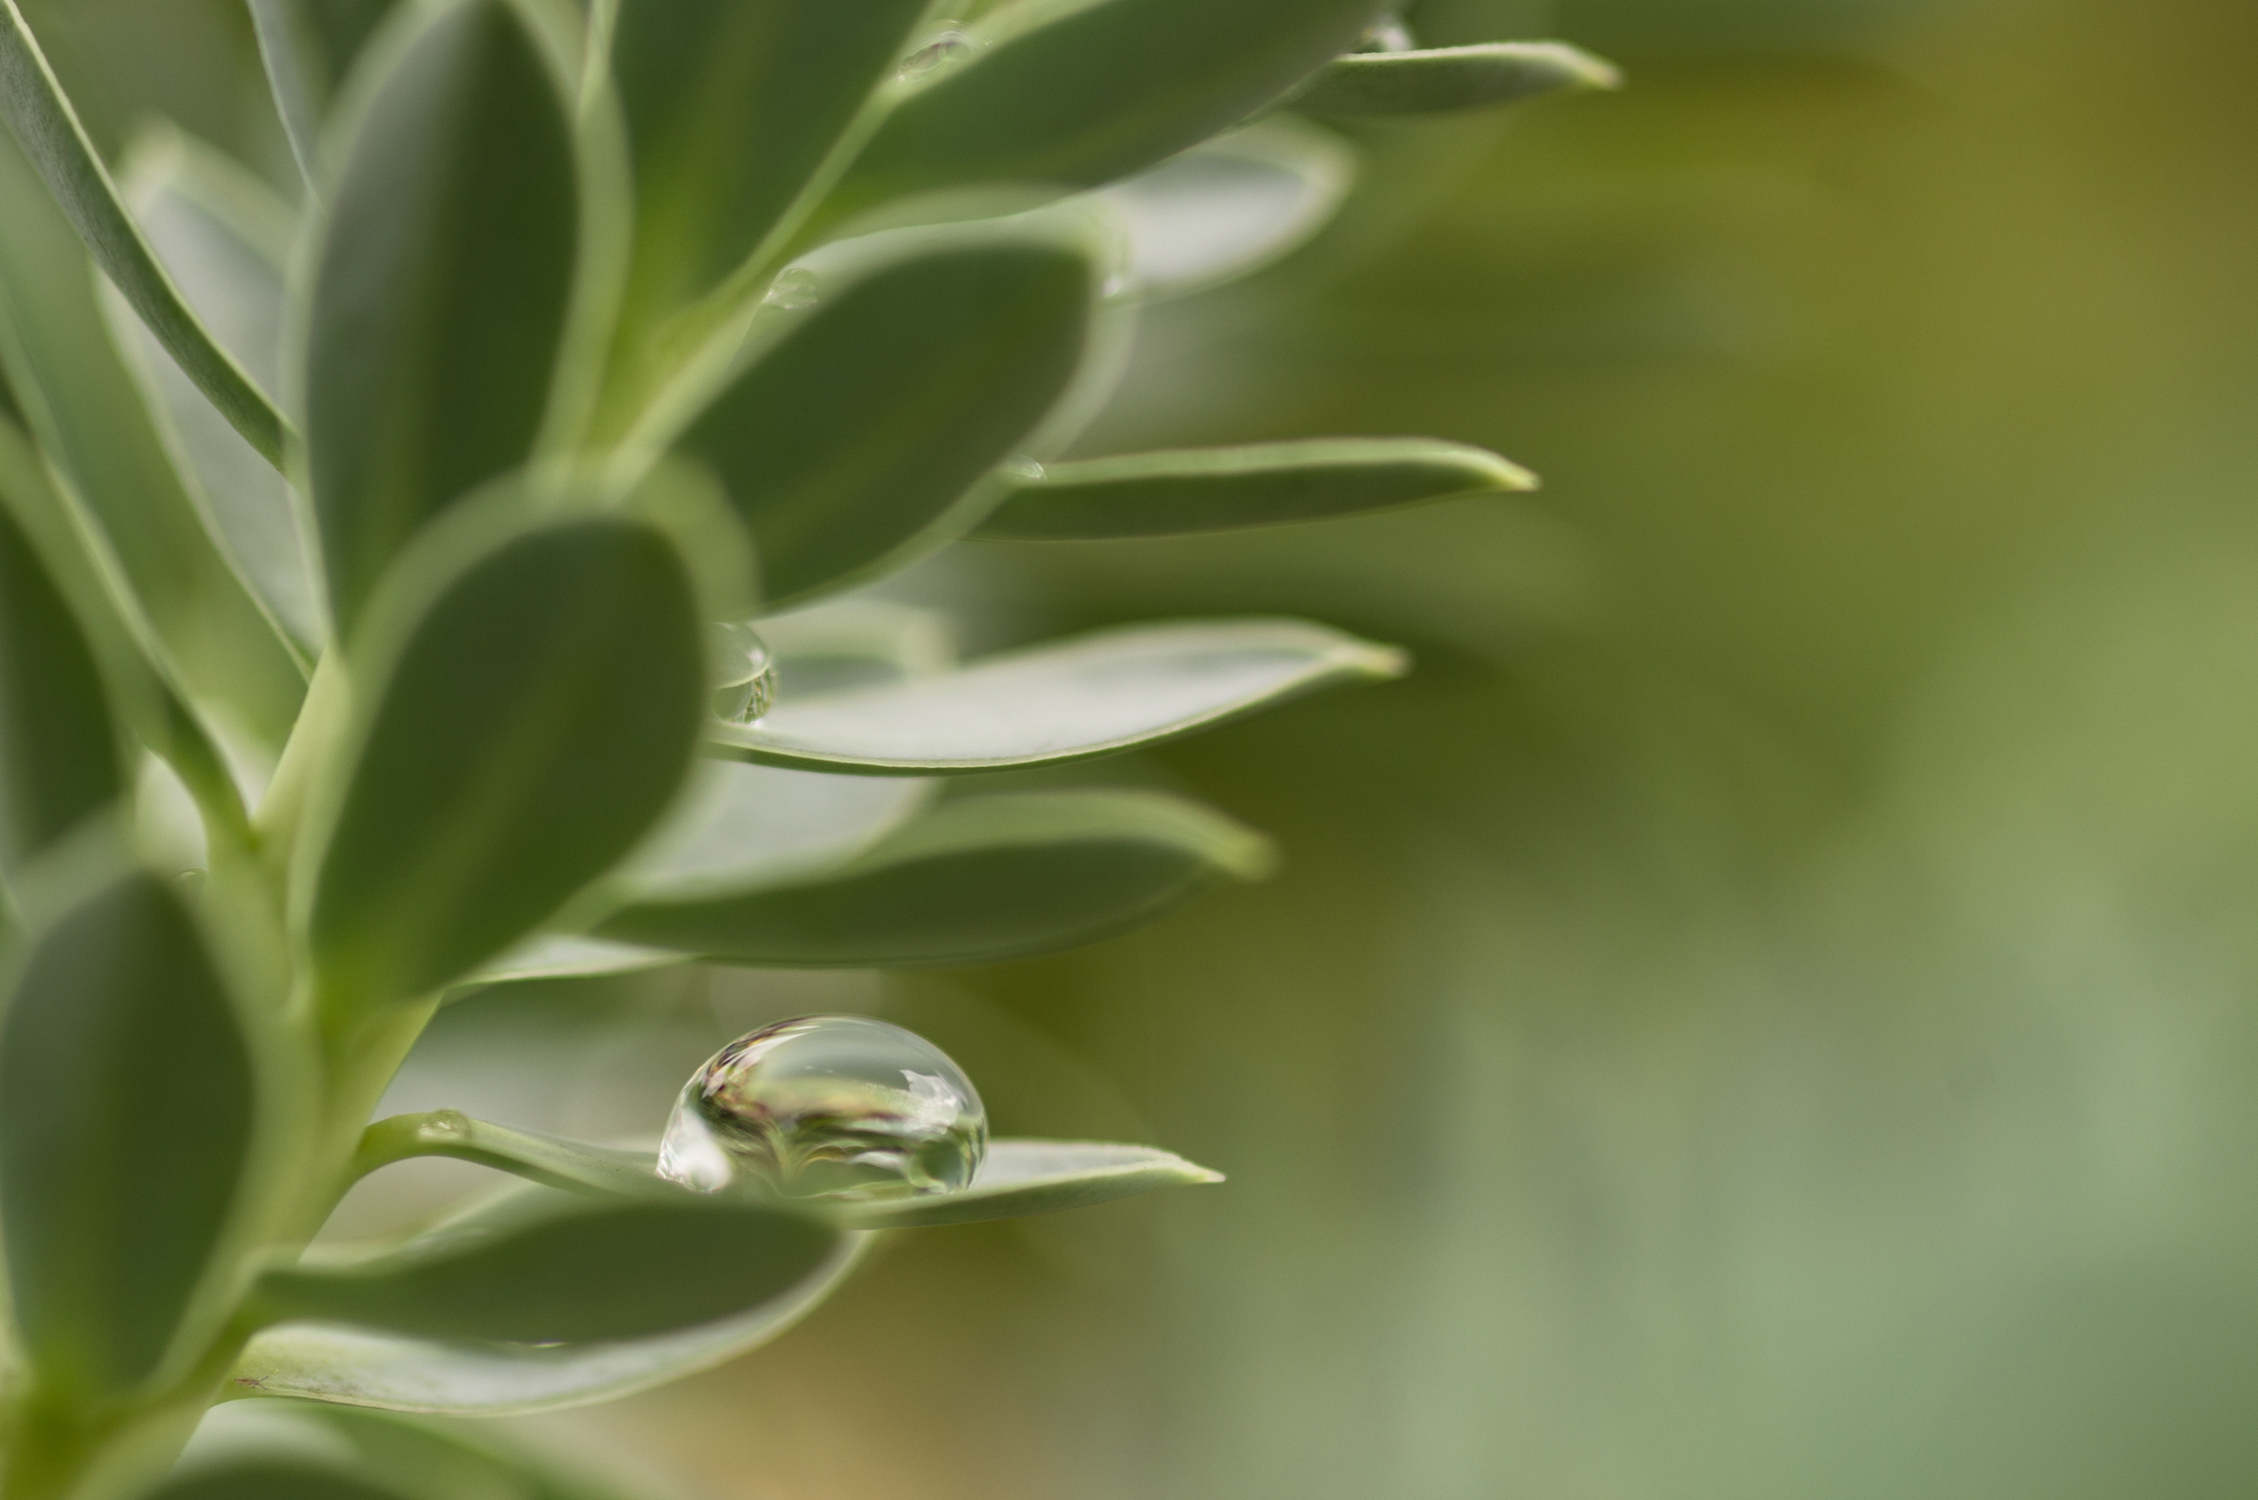 goutte d'eau sur une plante dans les tons verts